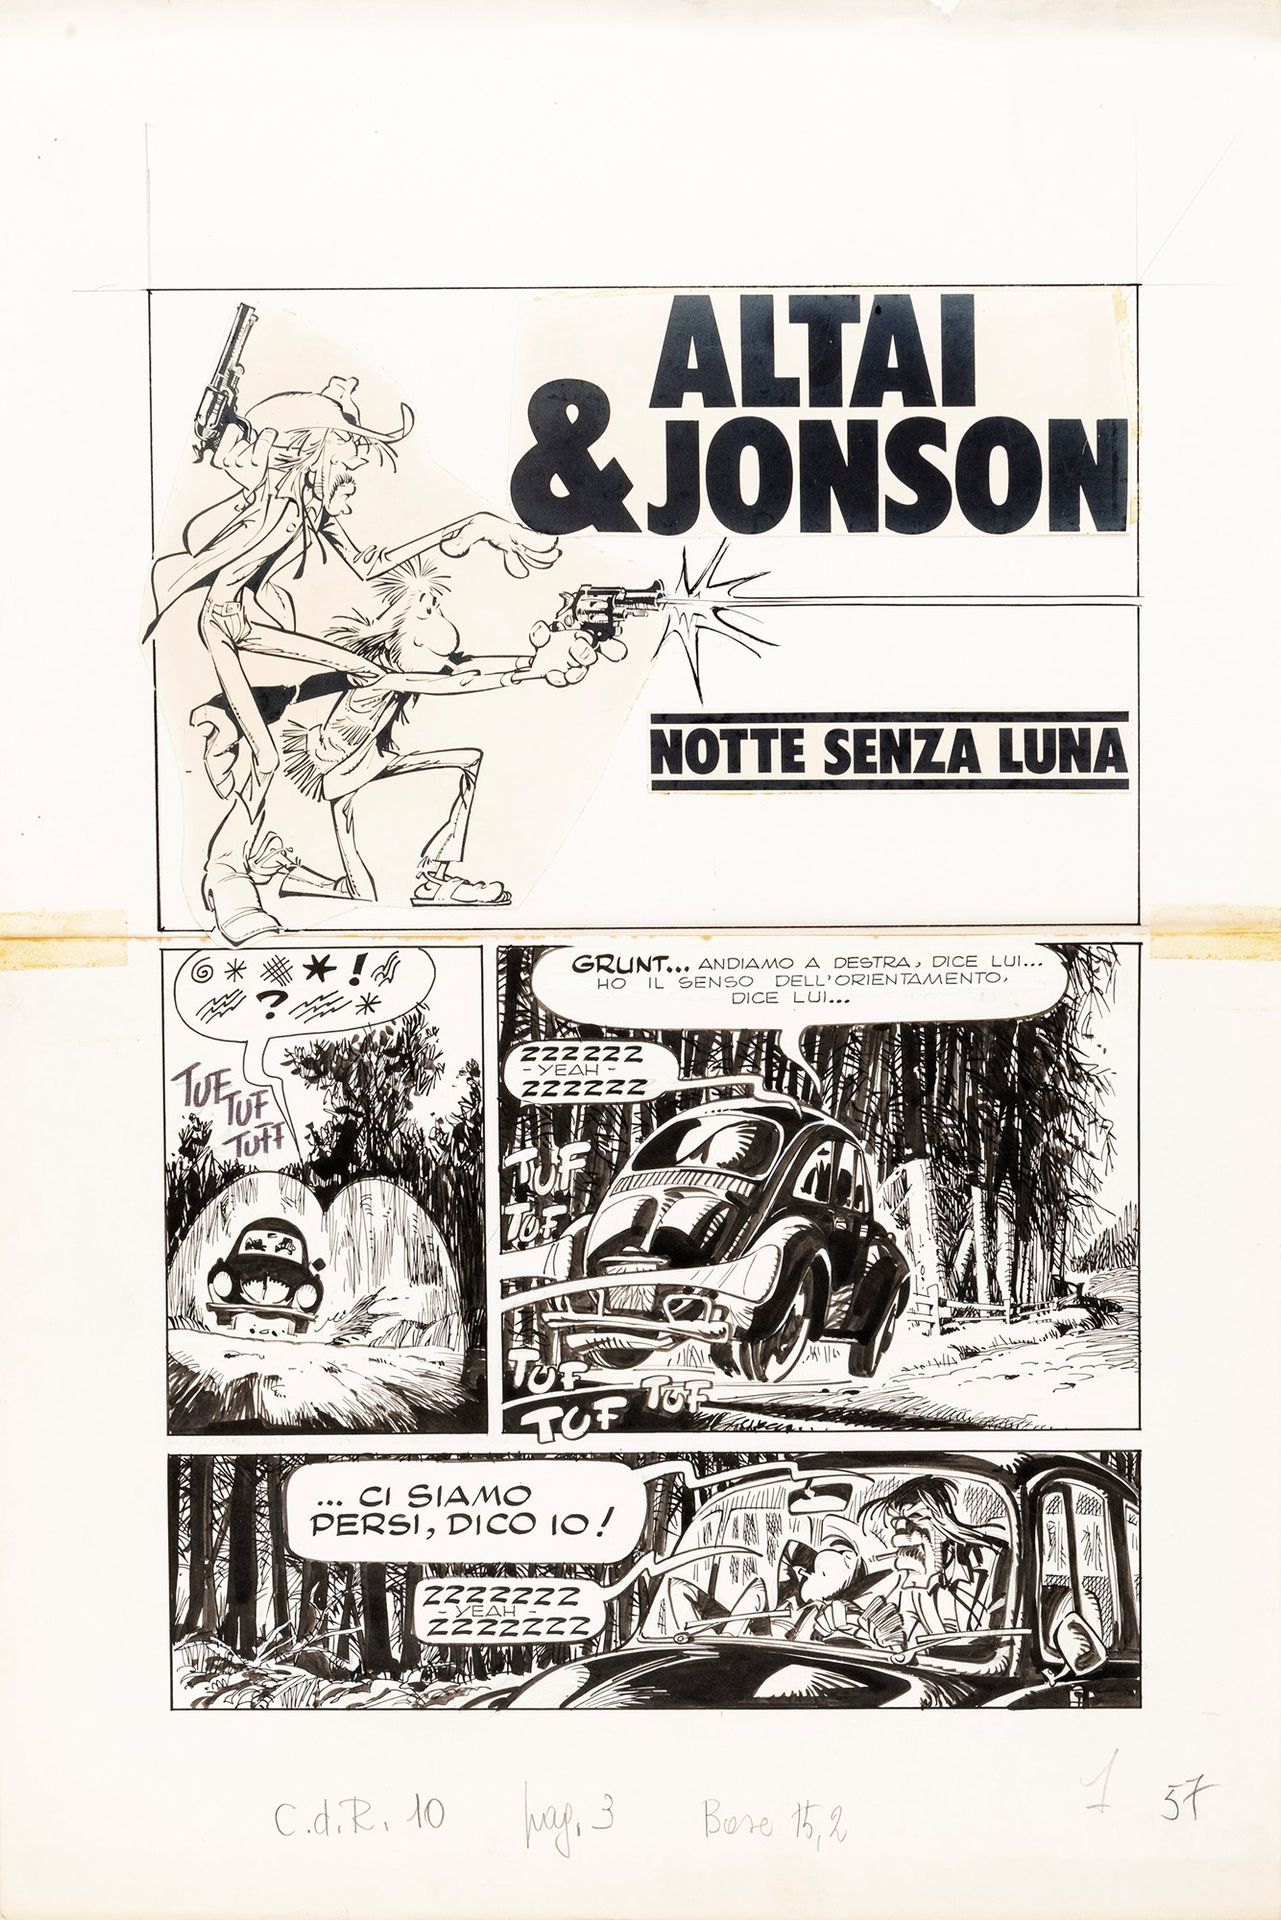 Giorgio Cavazzano Altai & Jonson - Notte senza luna, 1976

Bleistift und Tinte a&hellip;